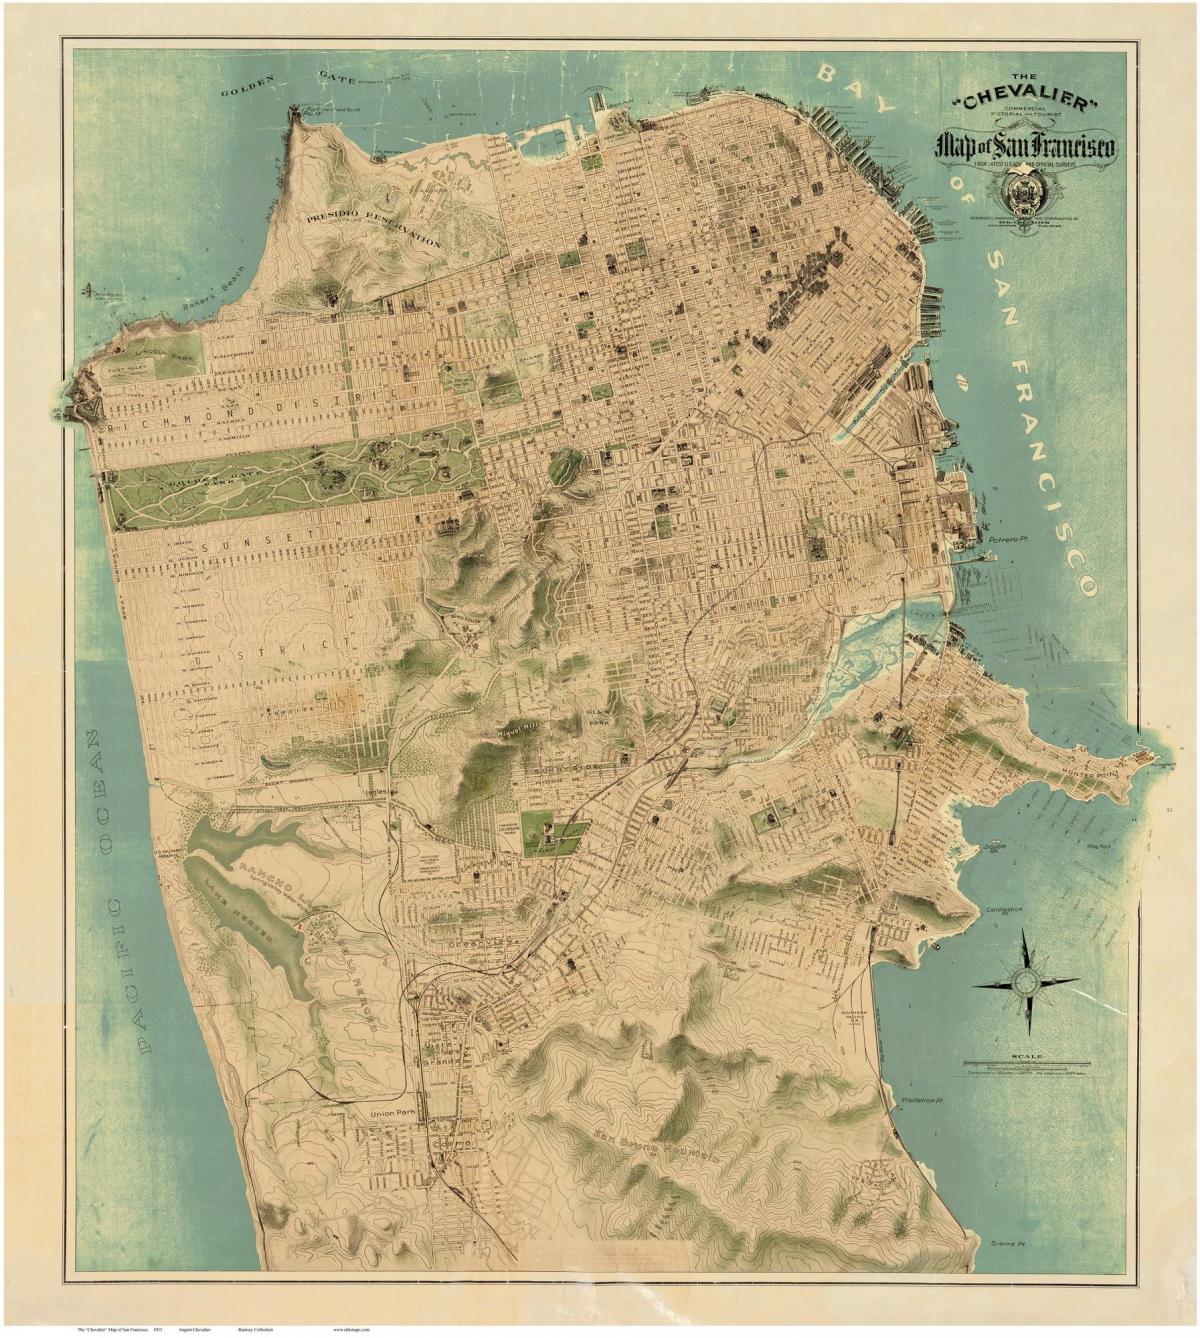 Mapa do antigo San Francisco 